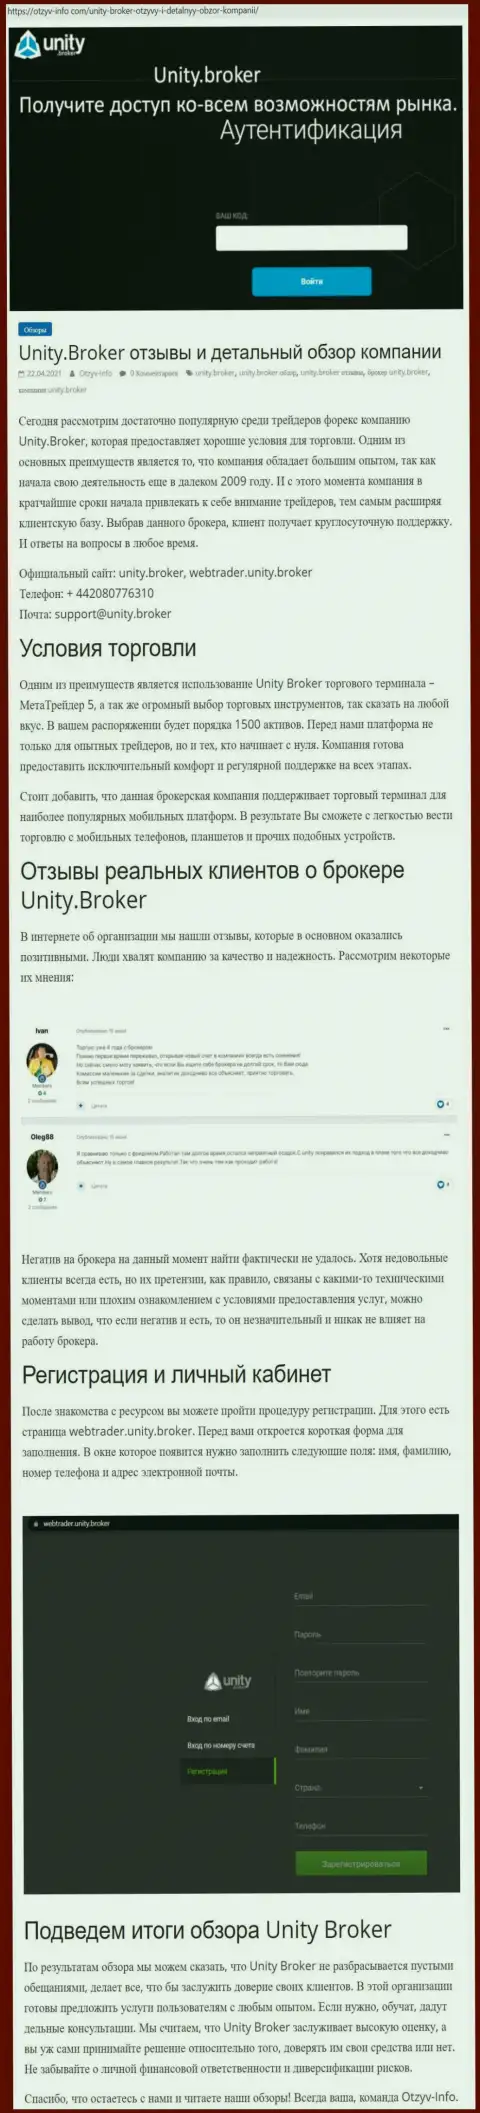 Обзор деятельности Форекс-брокерской компании УнитиБрокер на онлайн-площадке отзыв-инфо ком